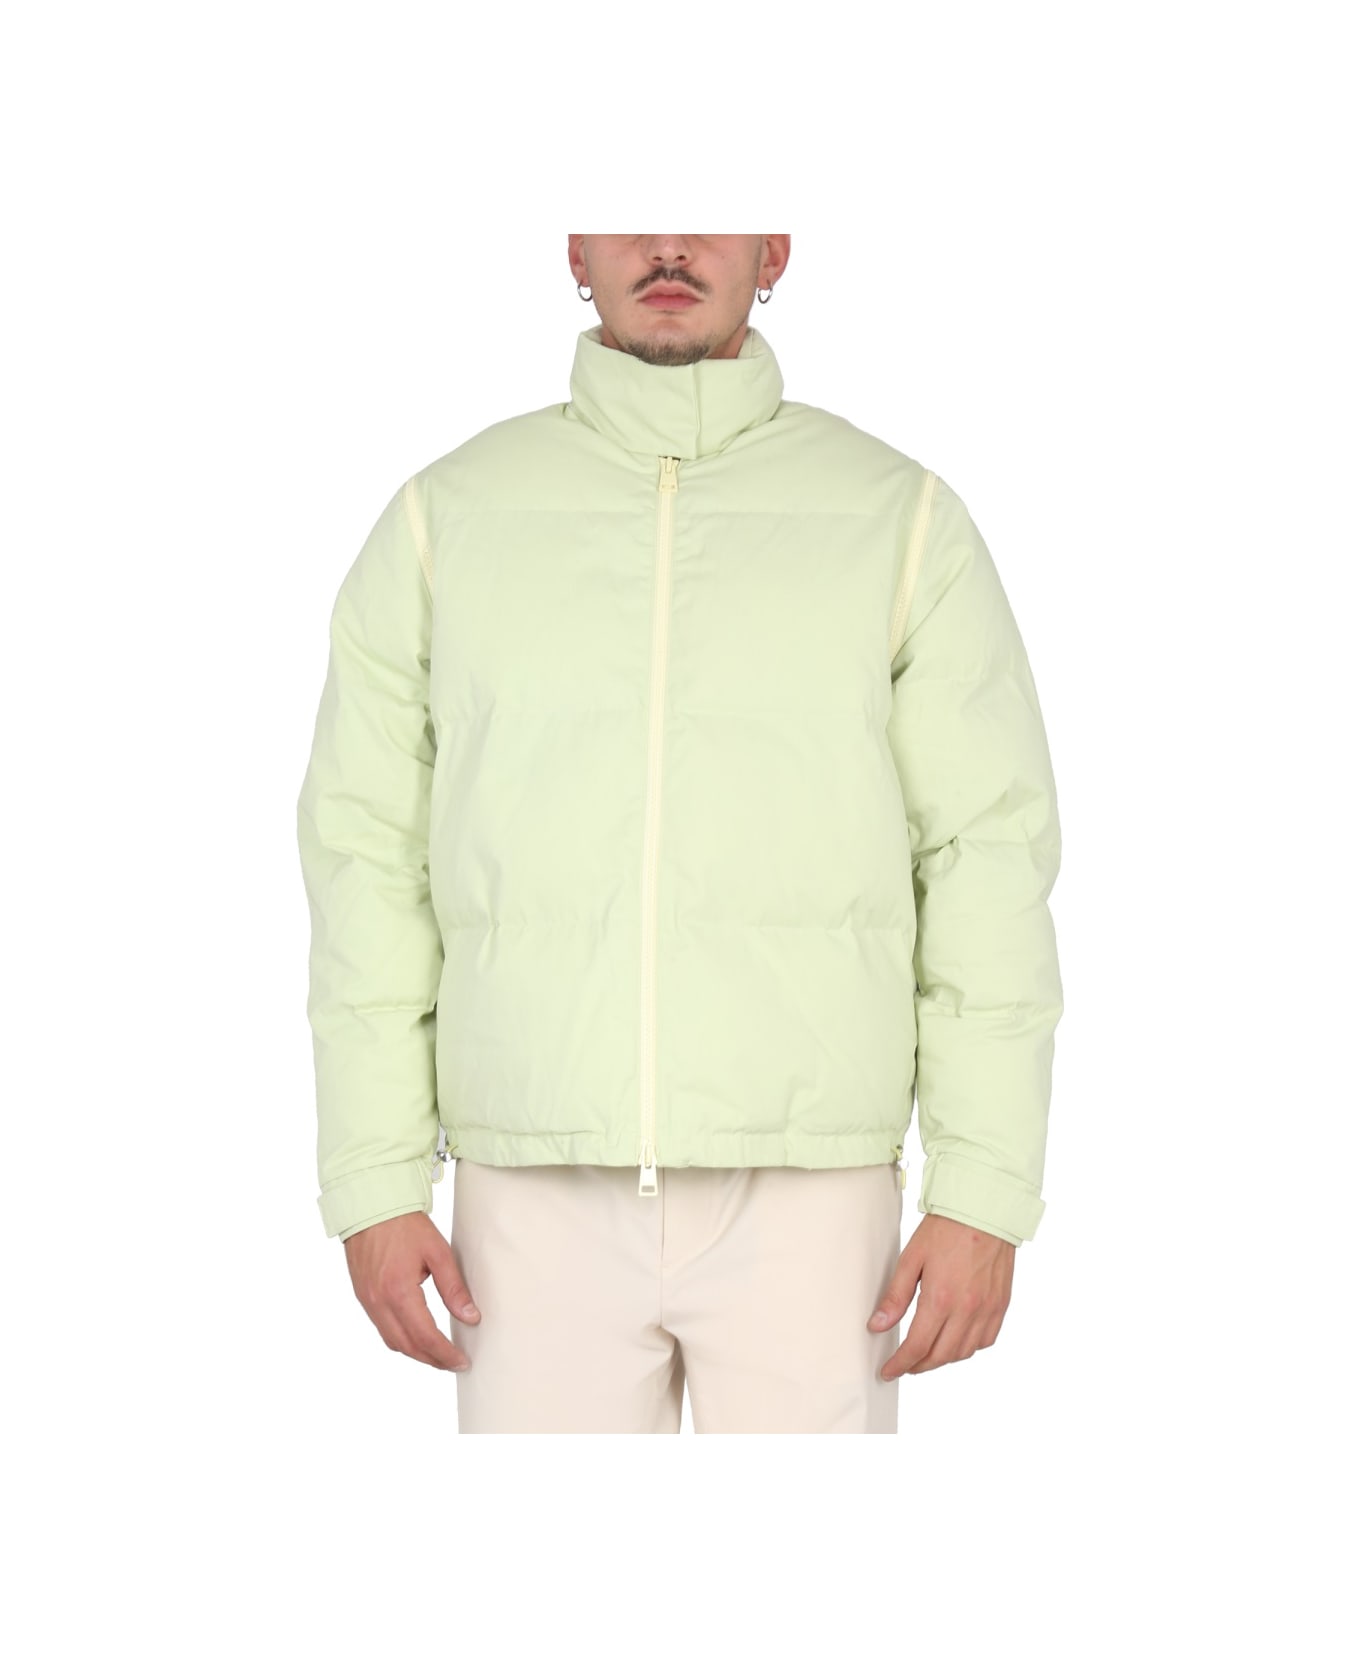 Sunnei Jacket With Zip - GREEN ダウンジャケット